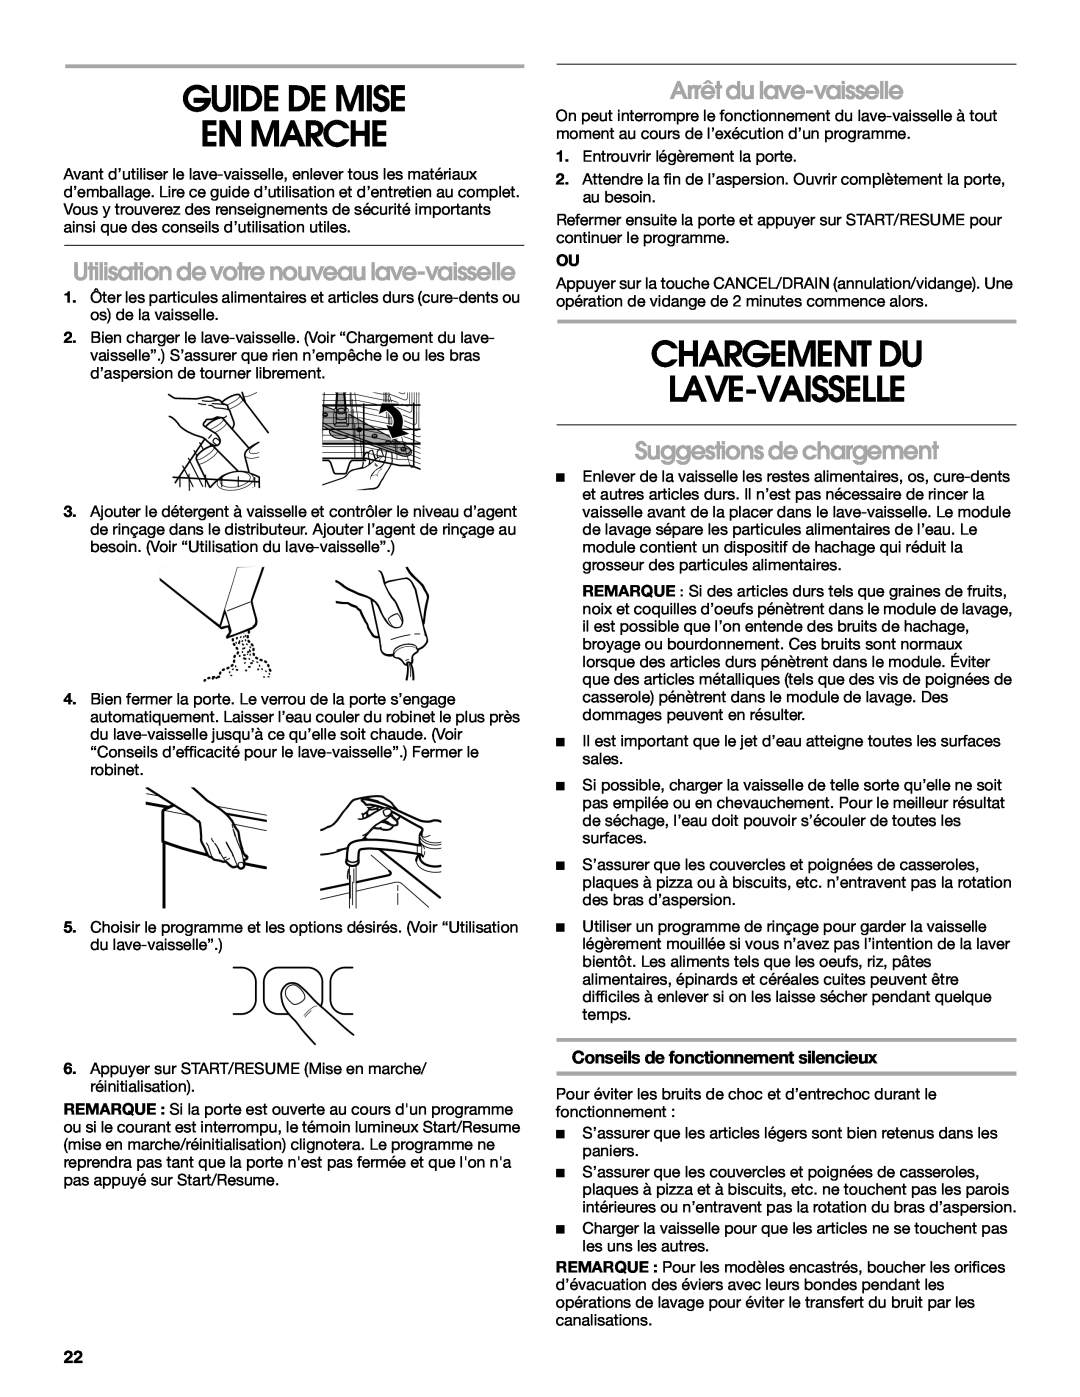 Whirlpool IUD8000R Guide De Mise En Marche, Chargement Du Lave-Vaisselle, Utilisation de votre nouveau lave-vaisselle 